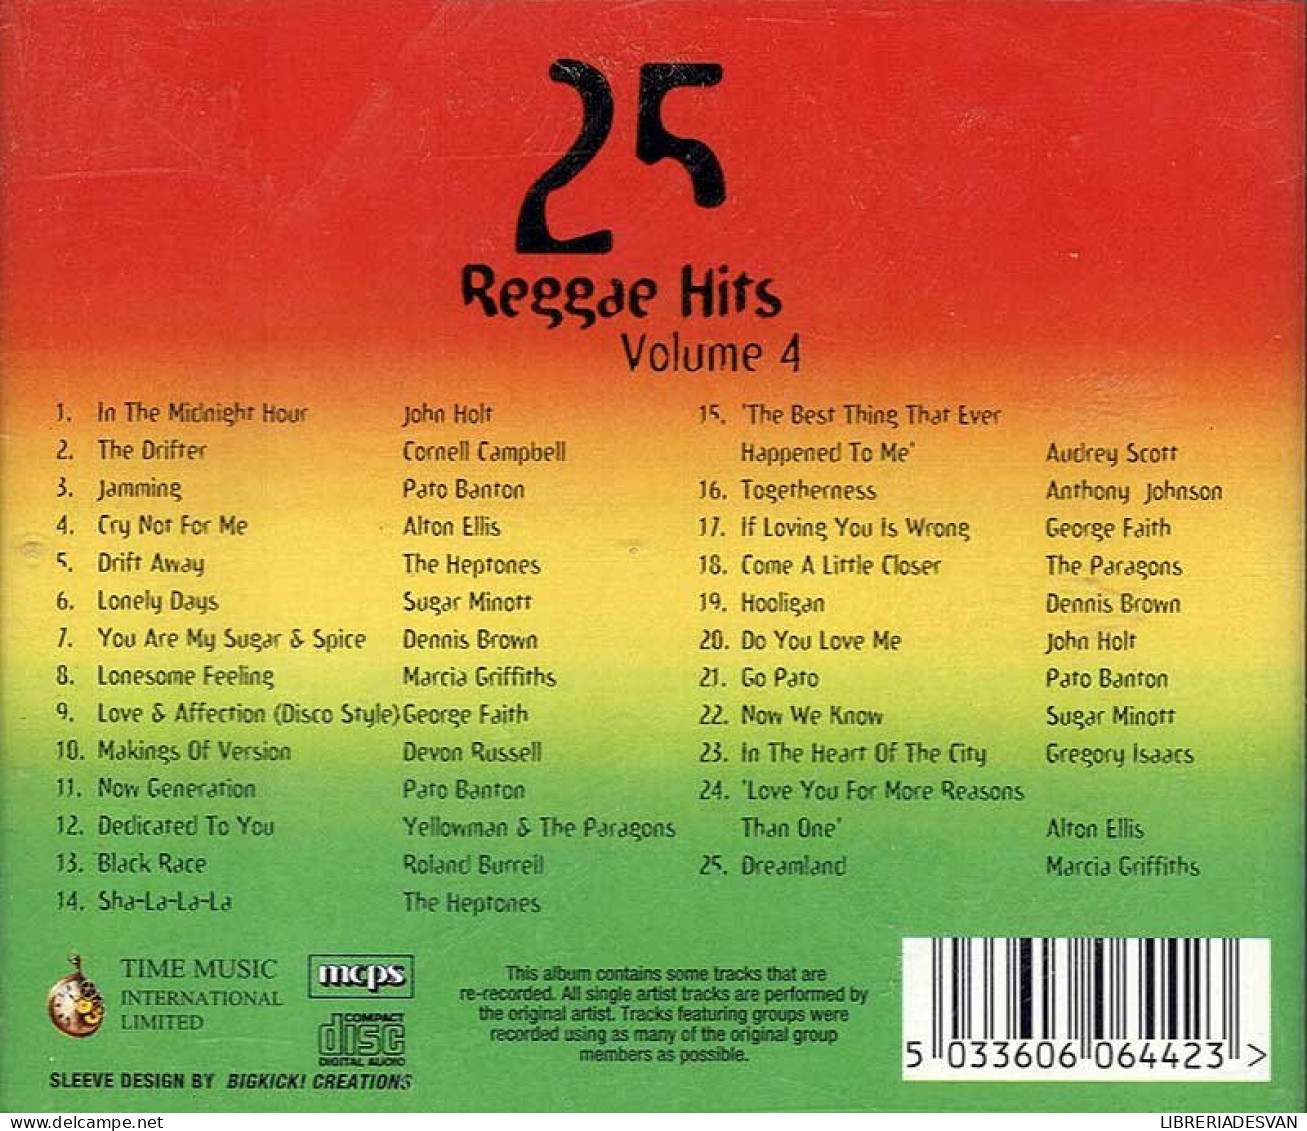 25 Reggae Hits Volume 4. CD - Reggae